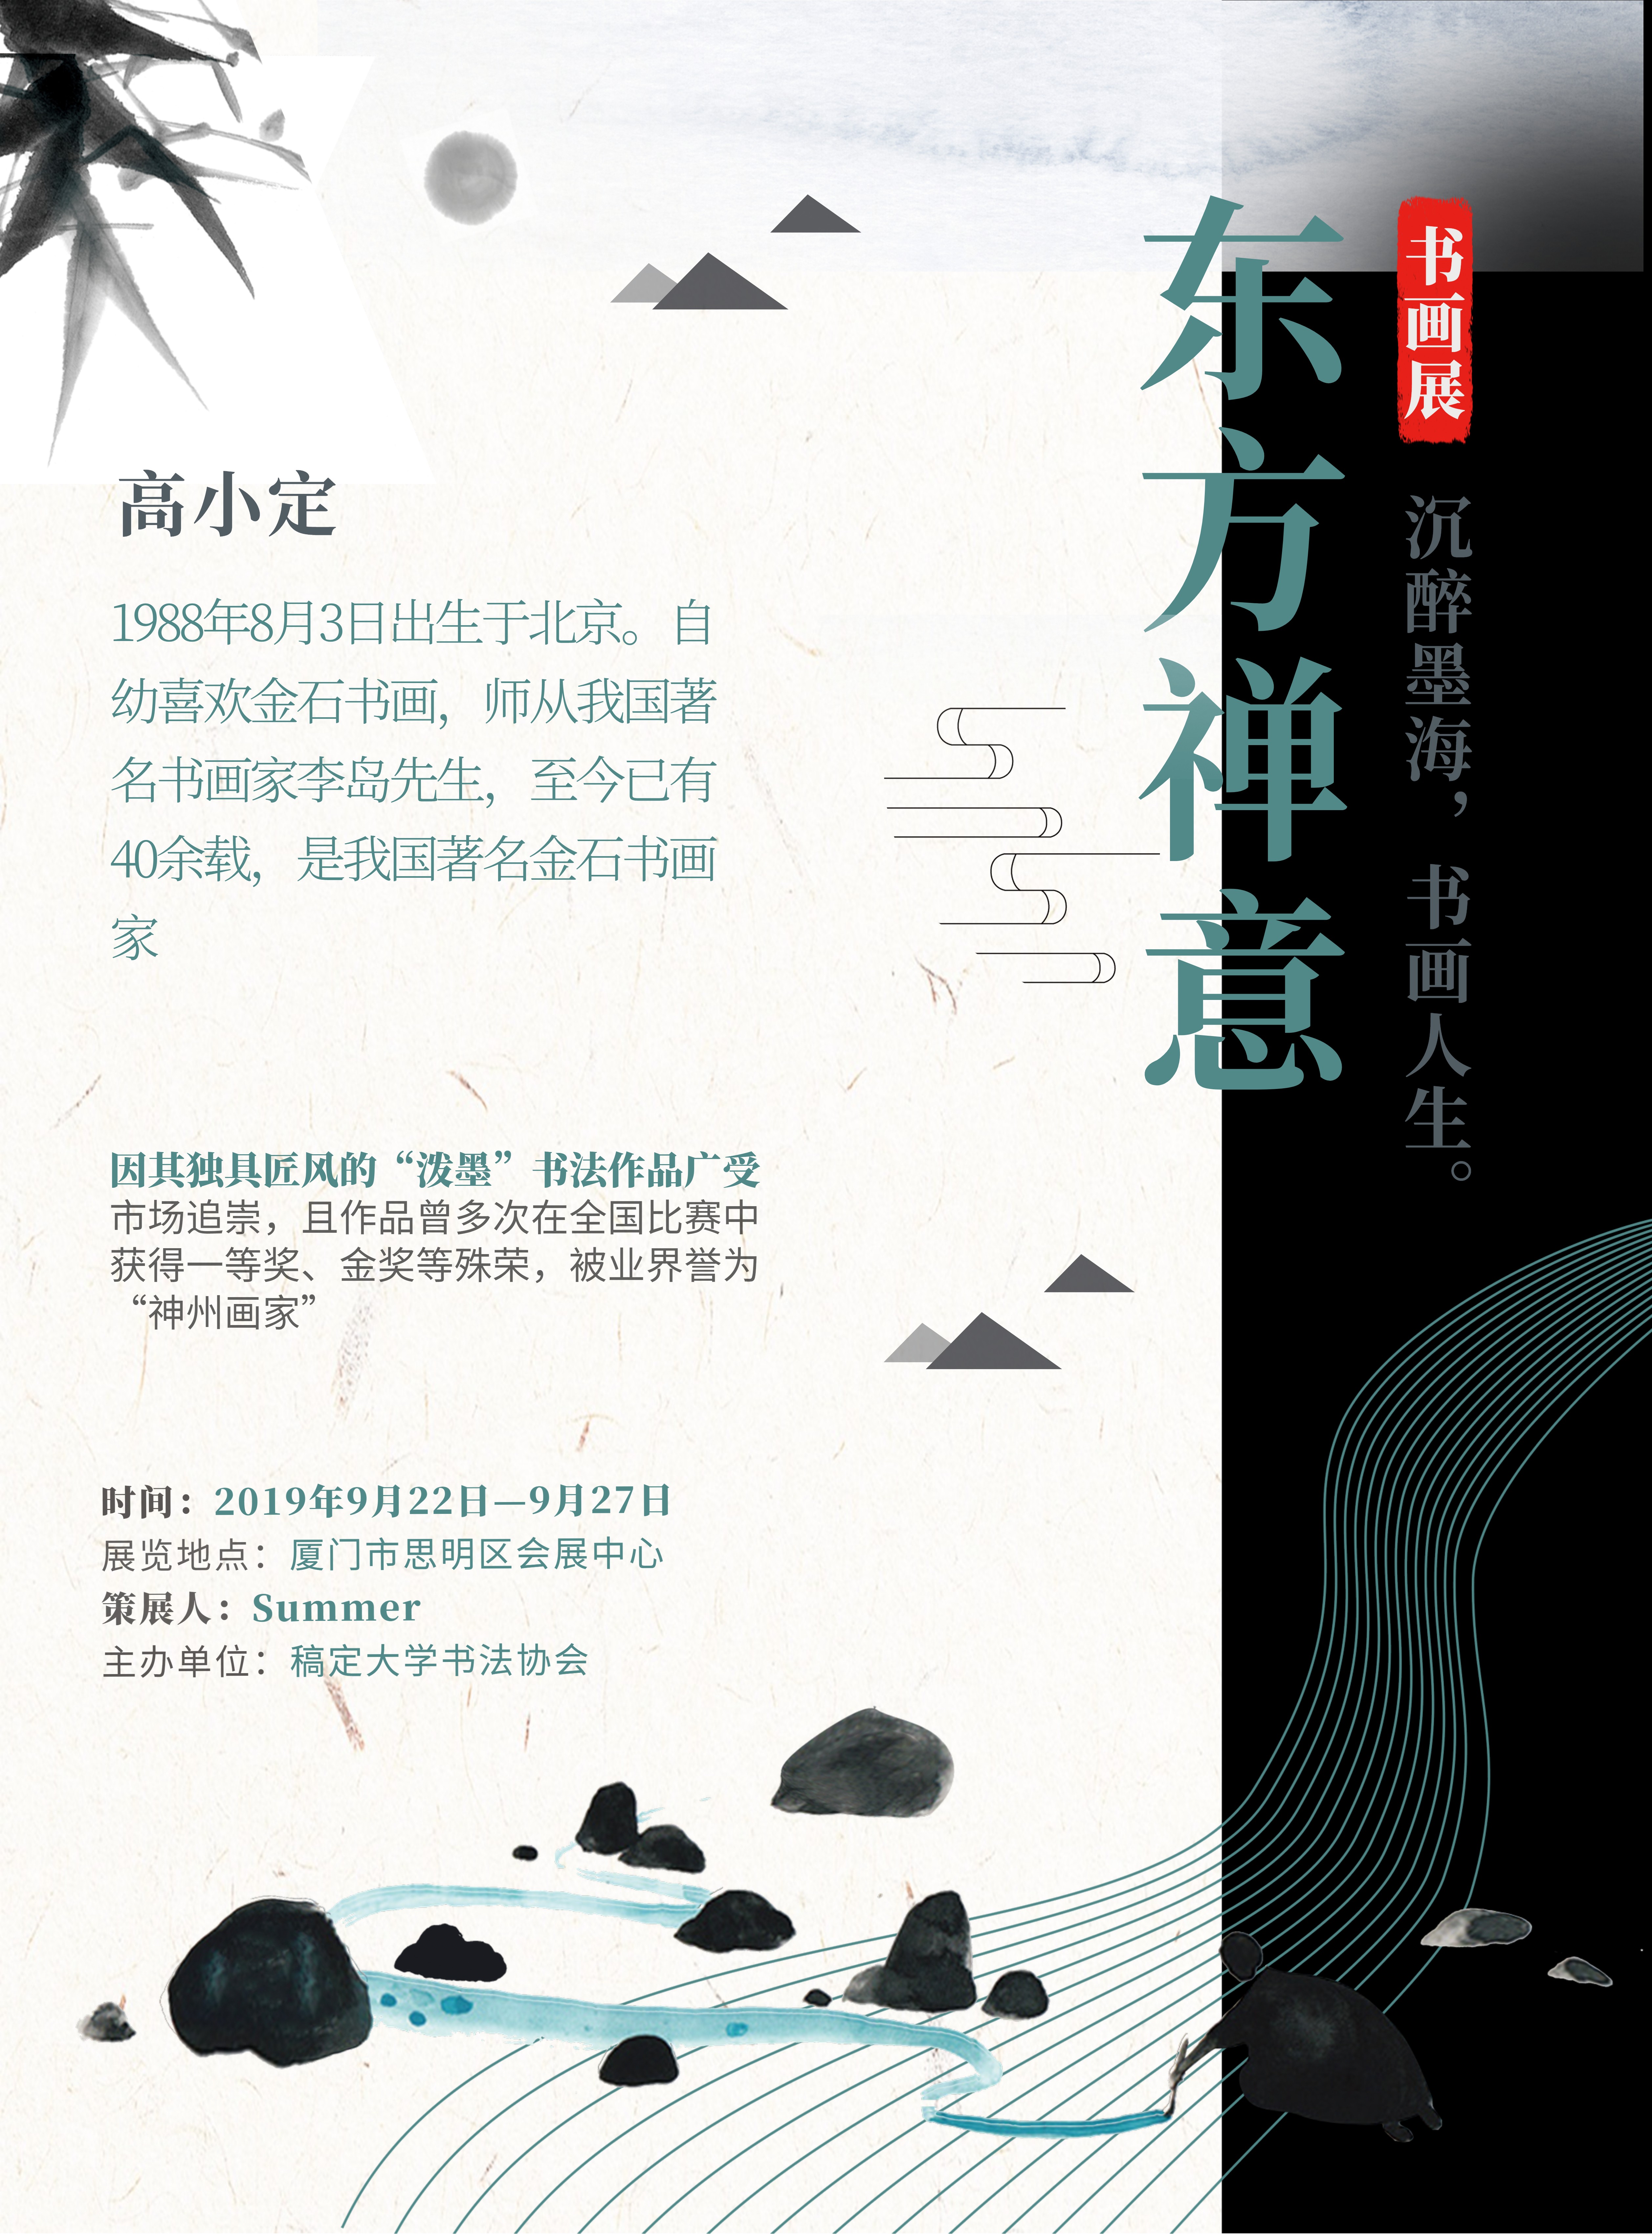 东方禅意古风设计展览印刷海报